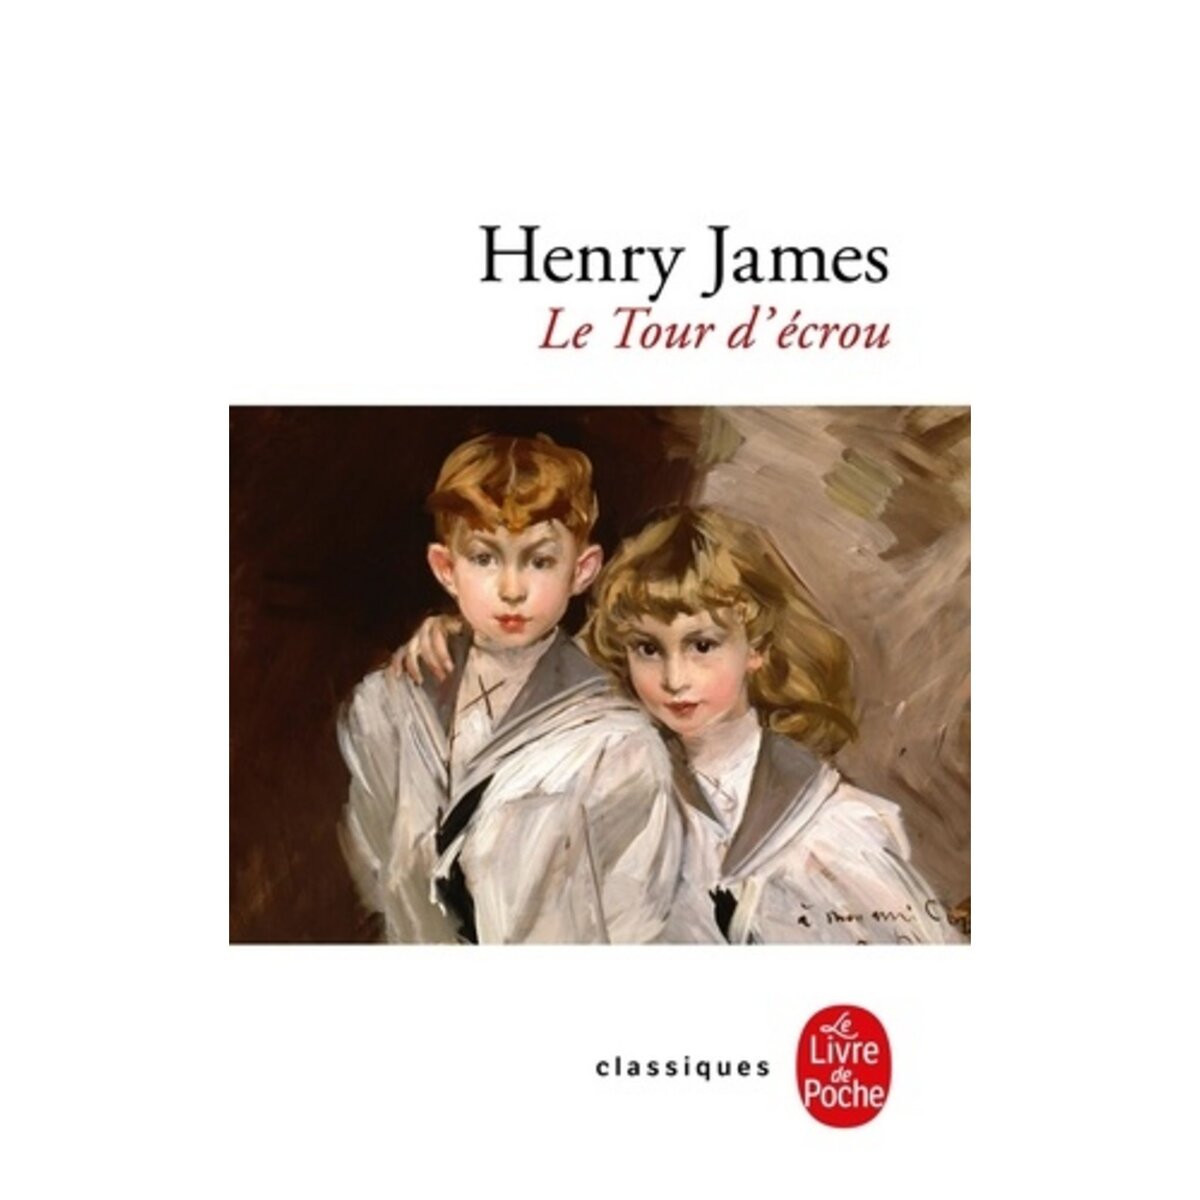  Le Tour d'écrou, James Henry